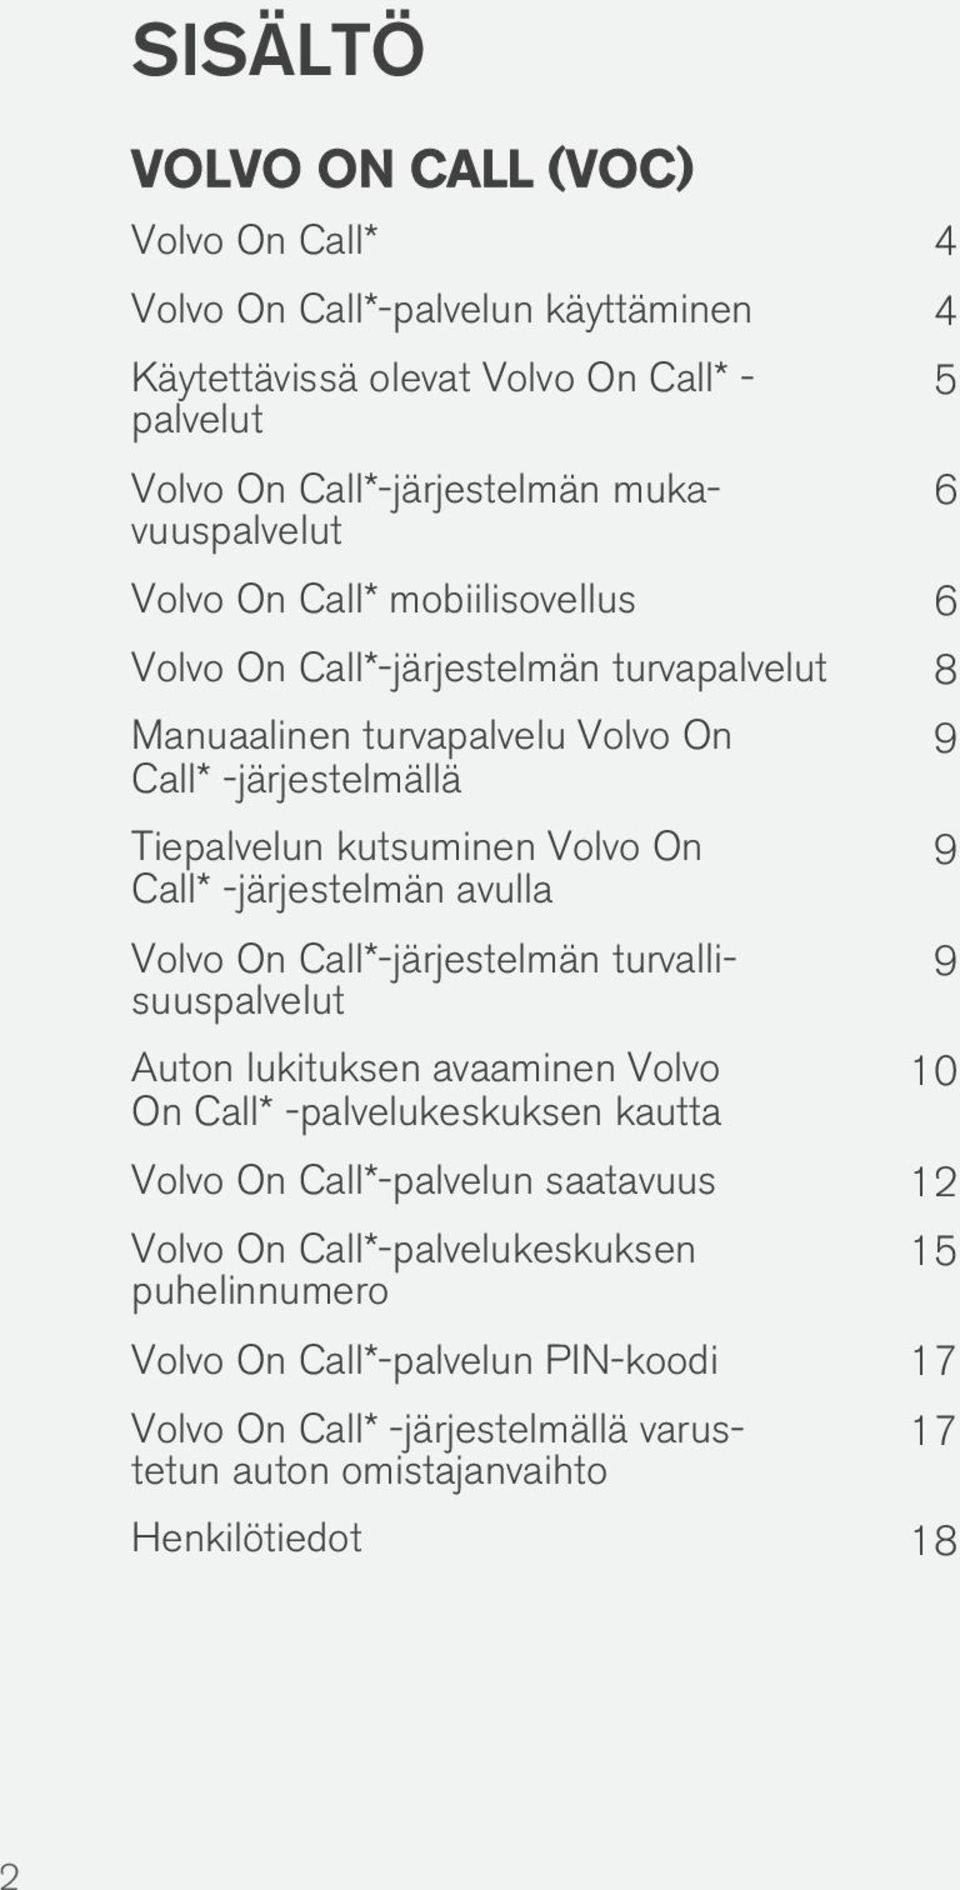 -järjestelmän avulla Volvo On Call*-järjestelmän turvallisuuspalvelut Auton lukituksen avaaminen Volvo On Call* -palvelukeskuksen kautta 5 6 9 9 9 10 Volvo On Call*-palvelun